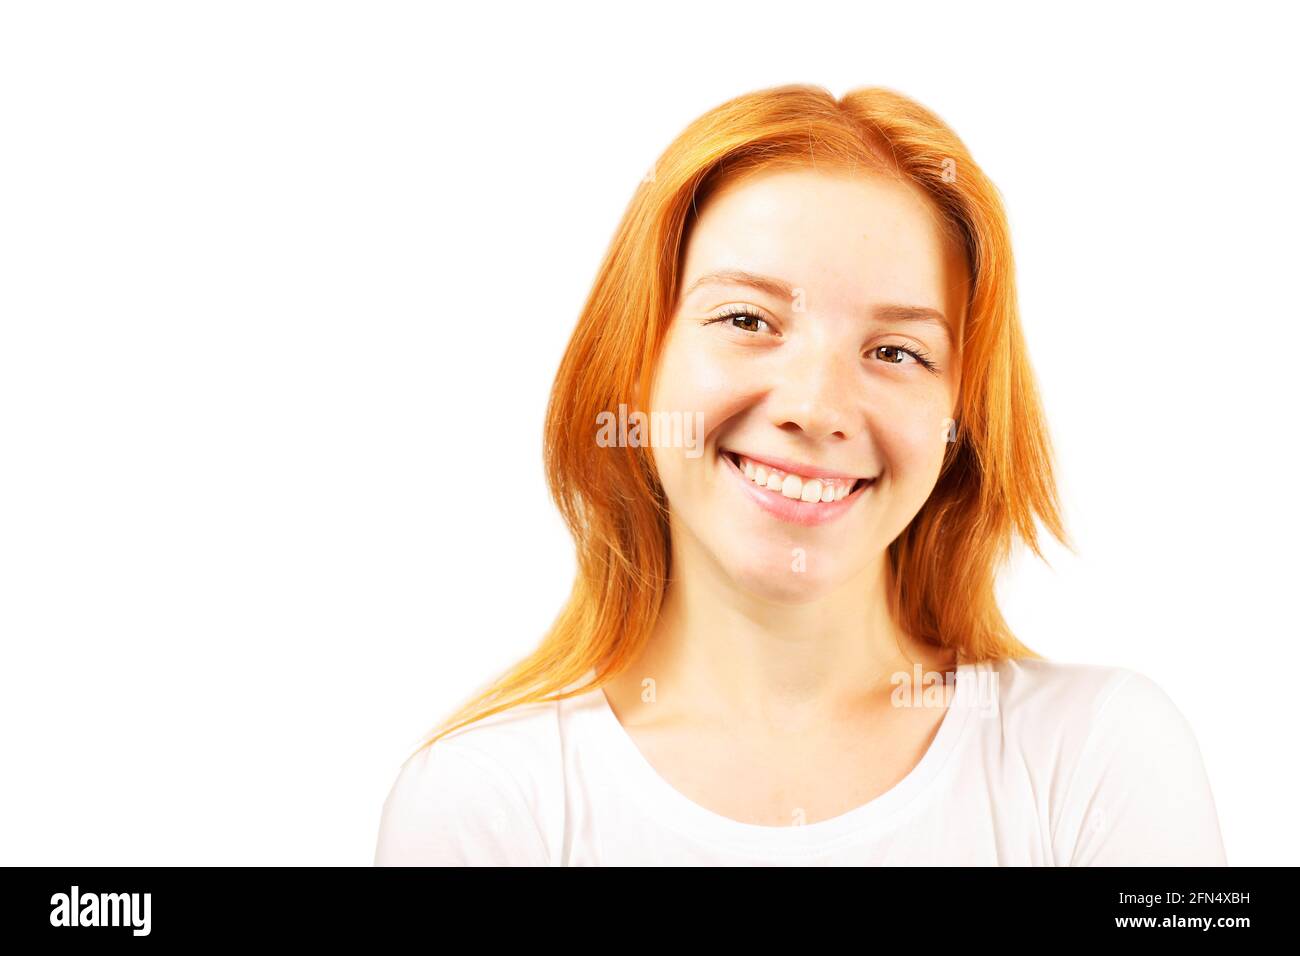 Bella giovane donna rossa con espressione facciale soddisfatta, isolata su sfondo bianco. Attraente femmina con capelli rossi naturali e occhi marroni Foto Stock